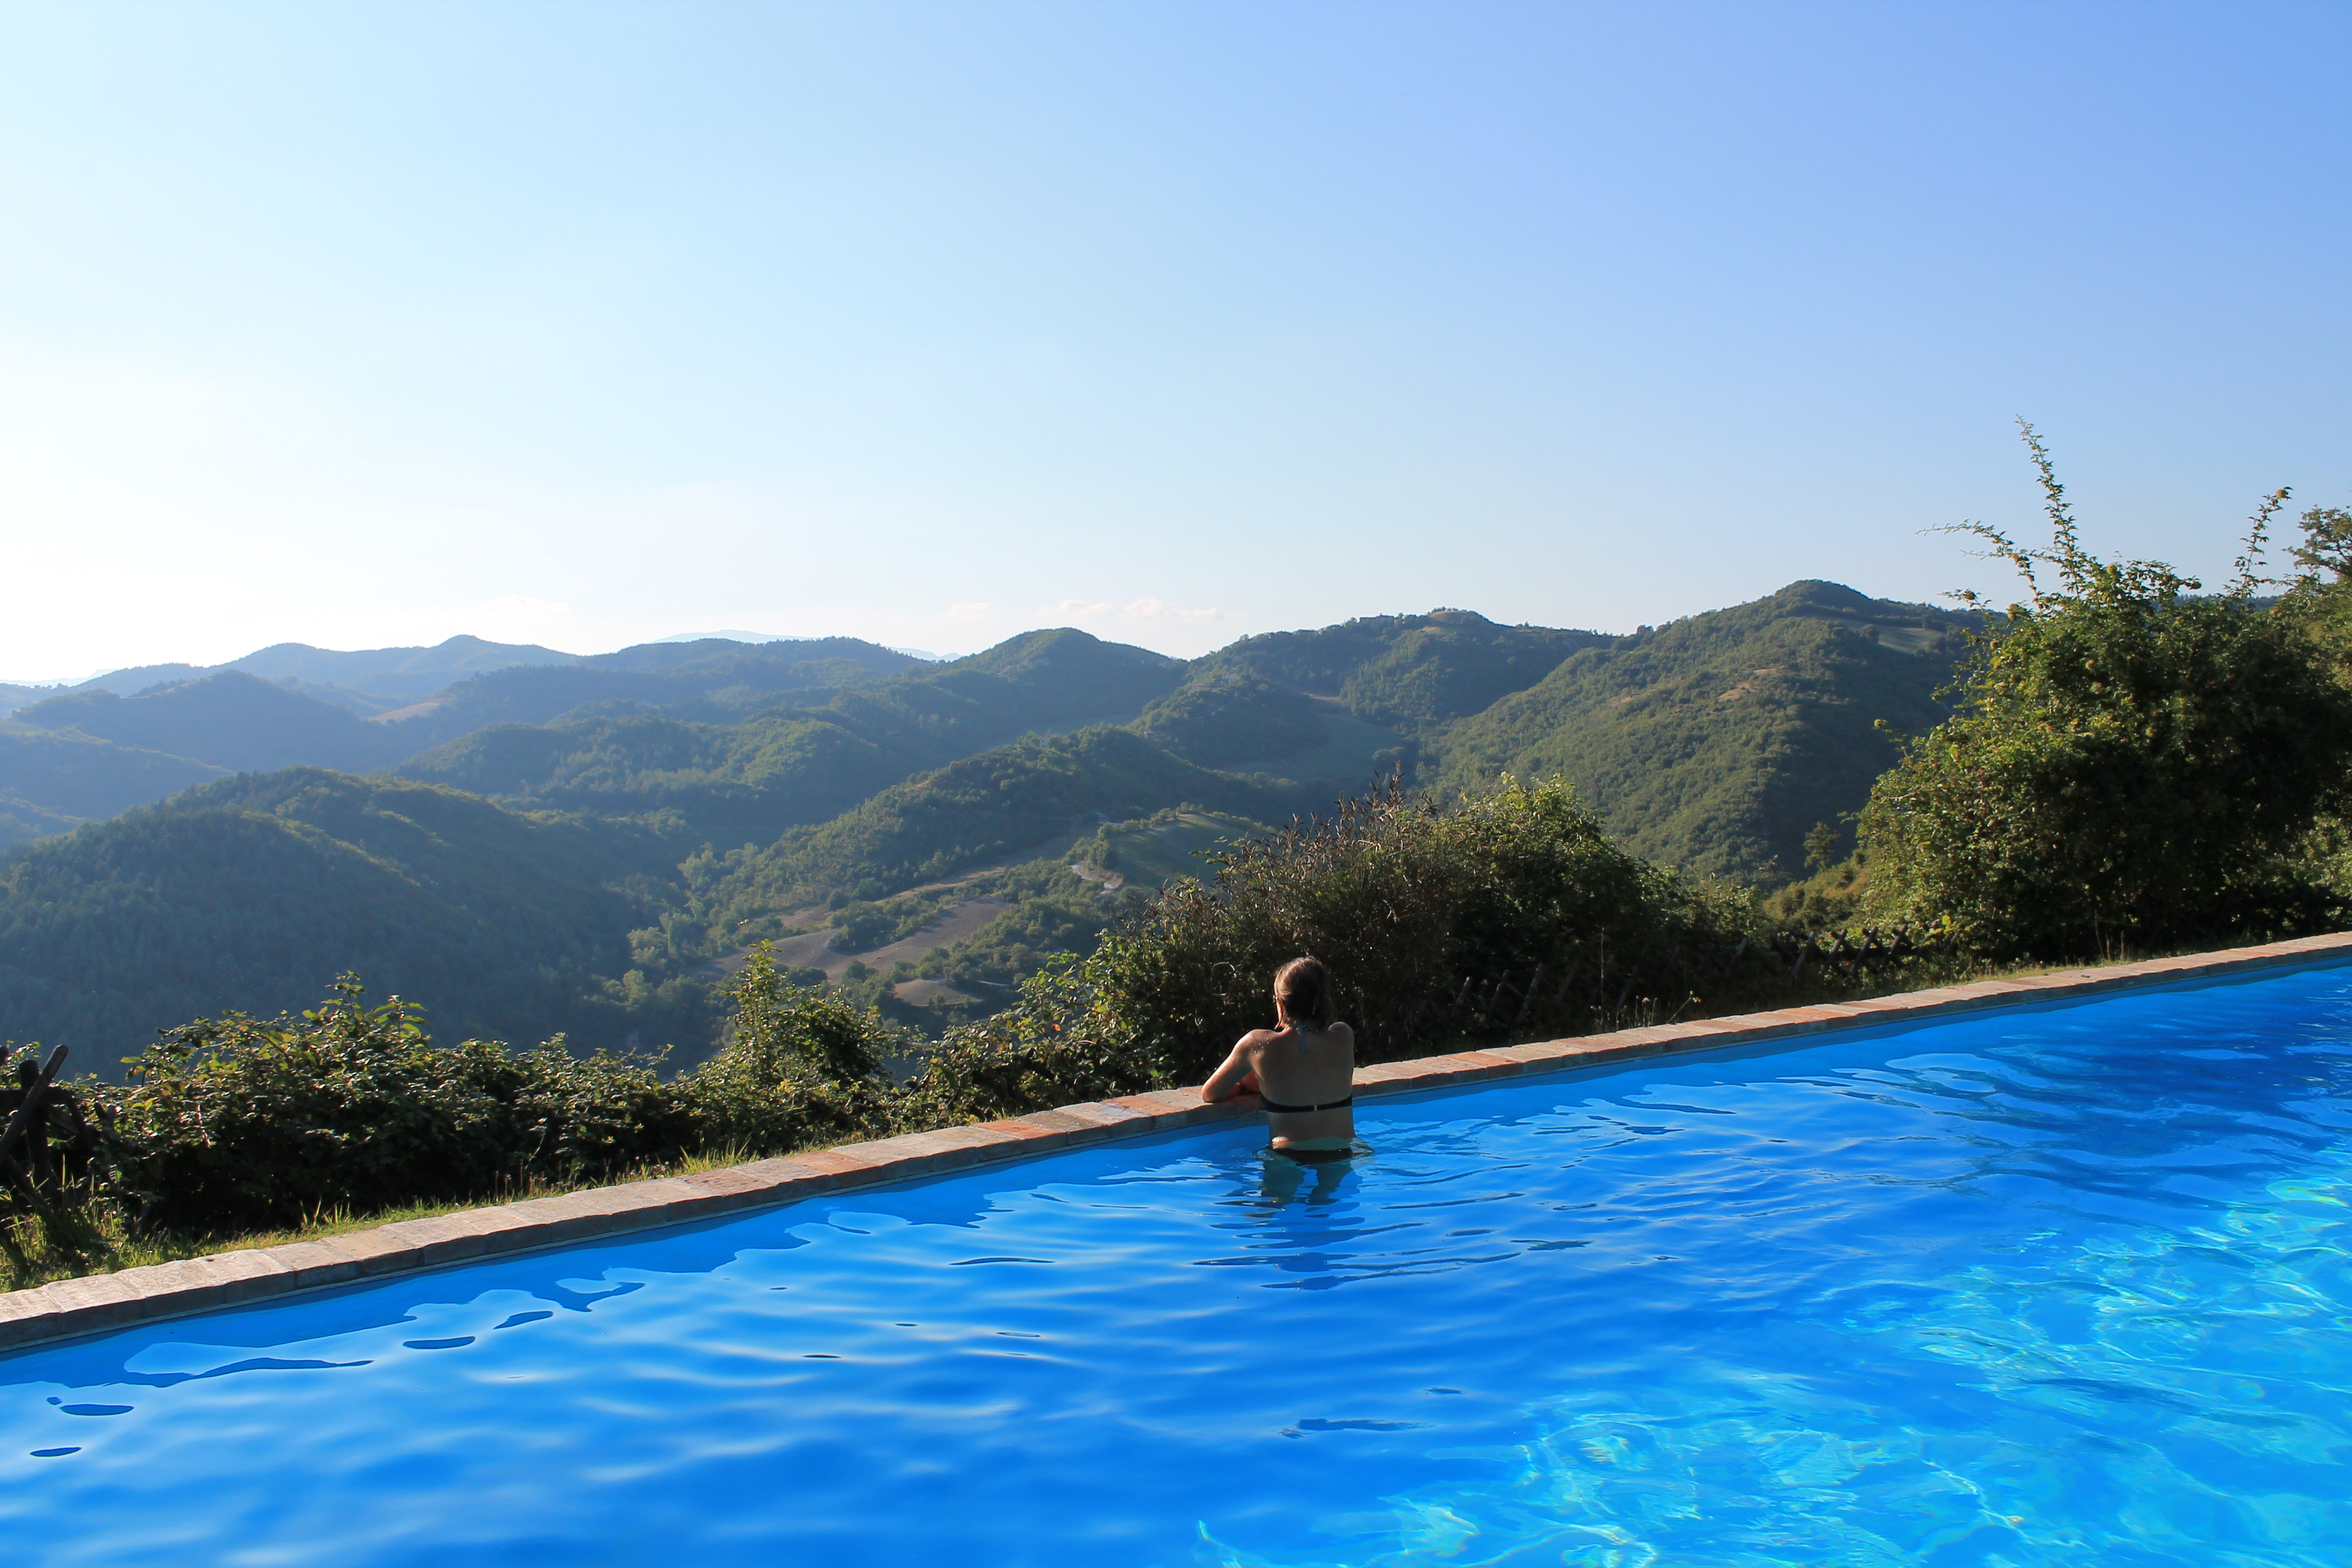 Country House il Biroccio Urbino, agriturismo collina Urbino, casa vacanze con piscina Urbino, piscina panoramica, collina, relax, benessere, panorama mozzafiato